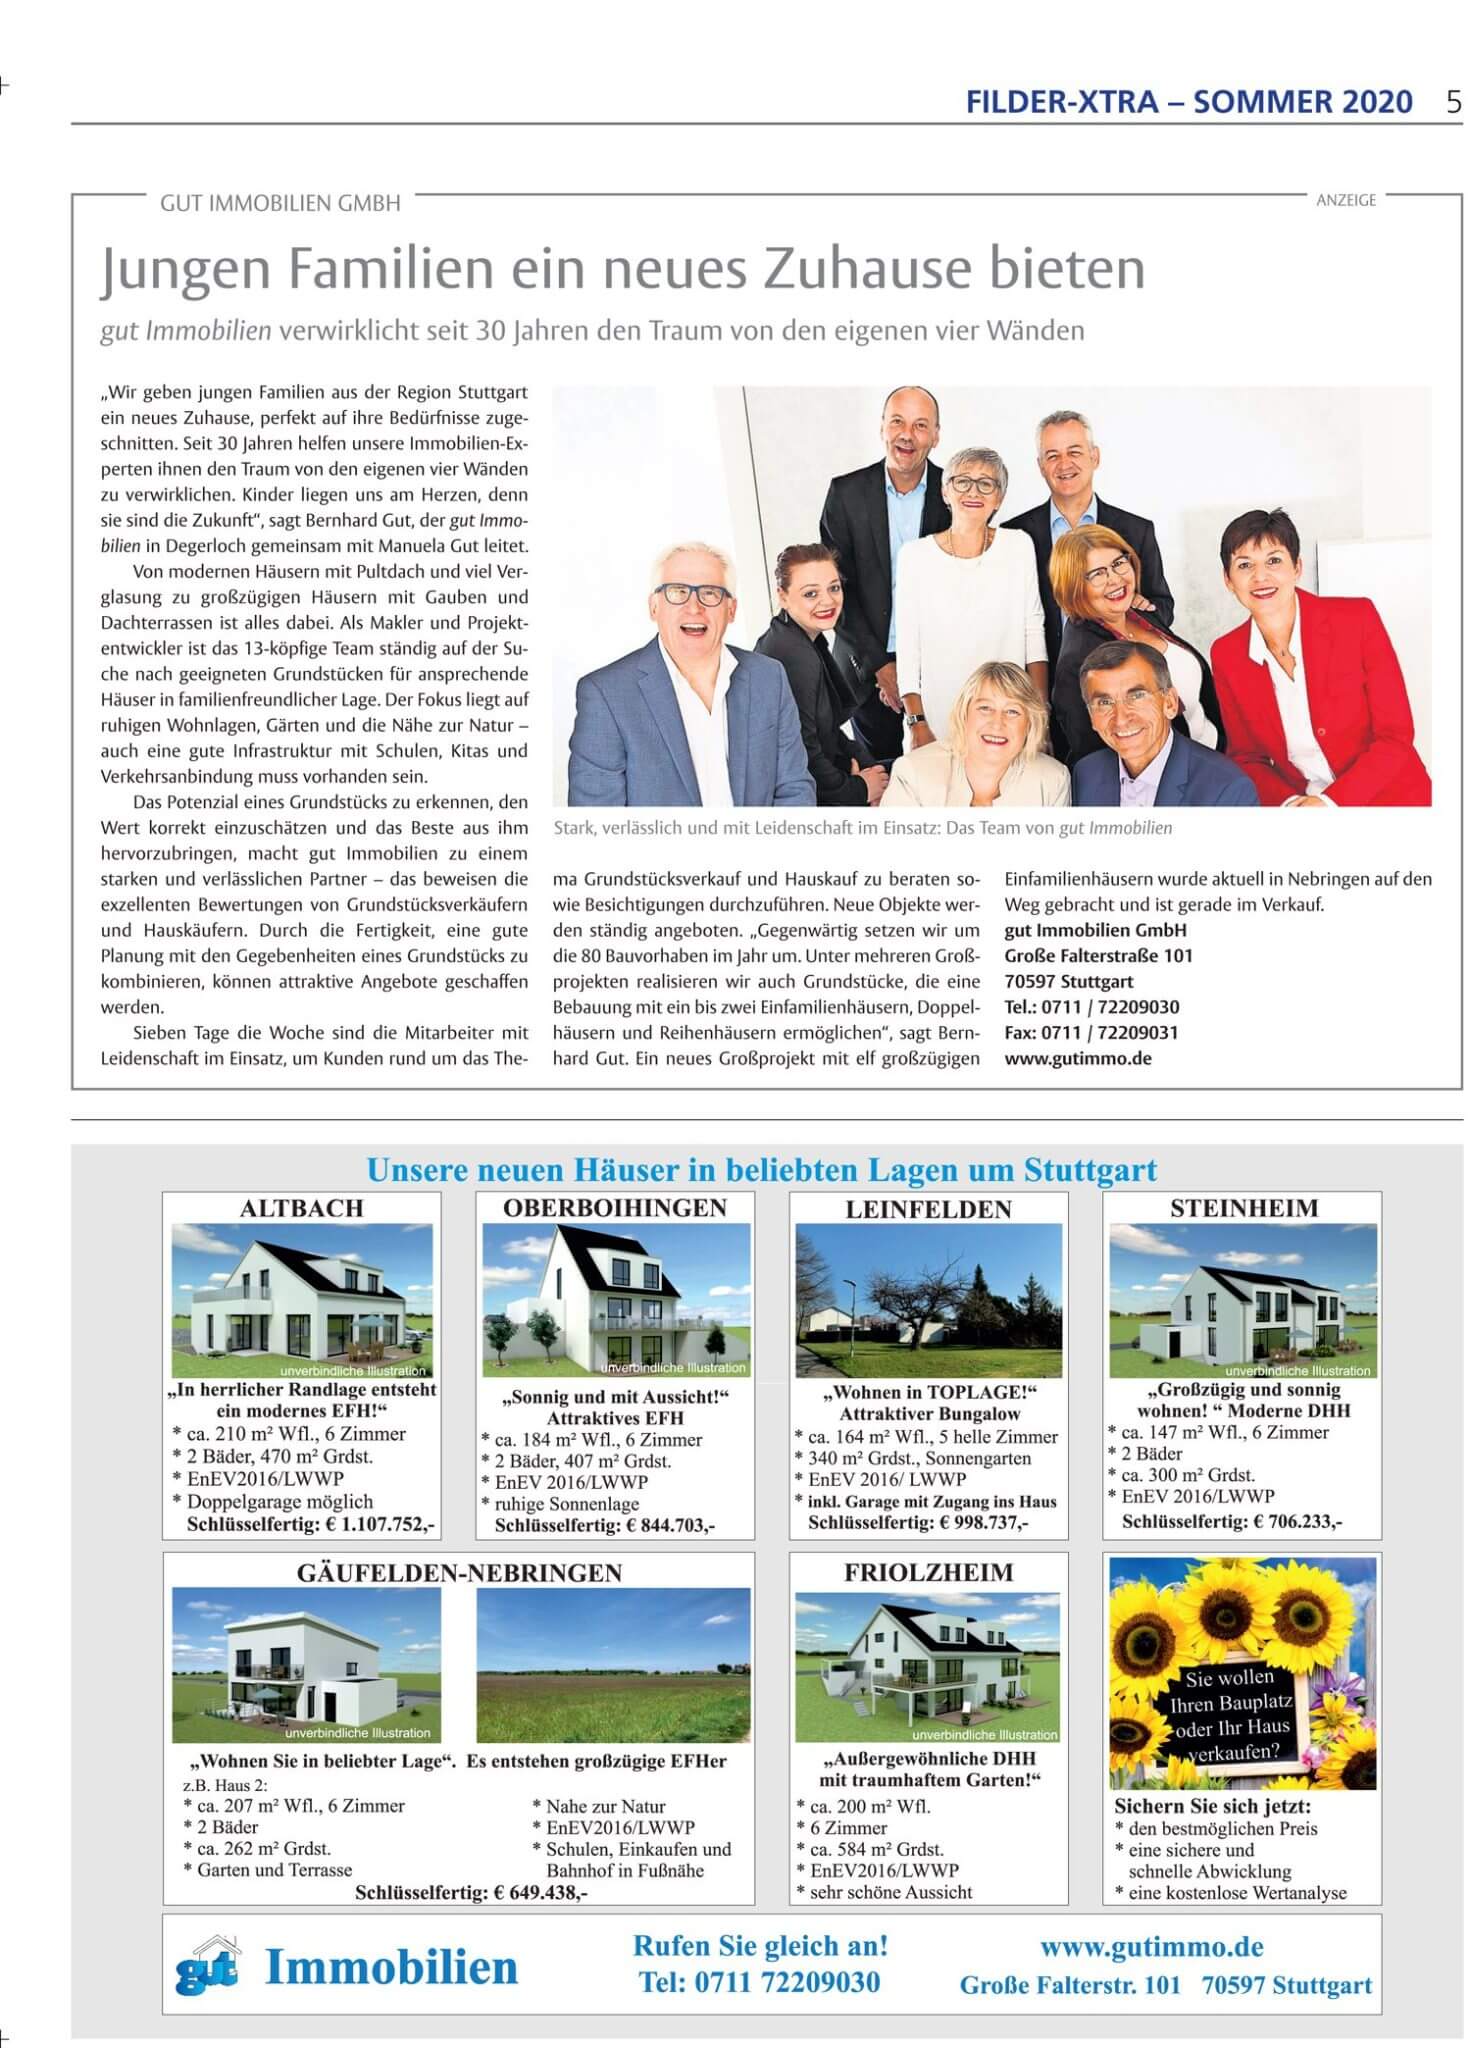 Bericht über gut Immobilien in der Stuttgarter Zeitung